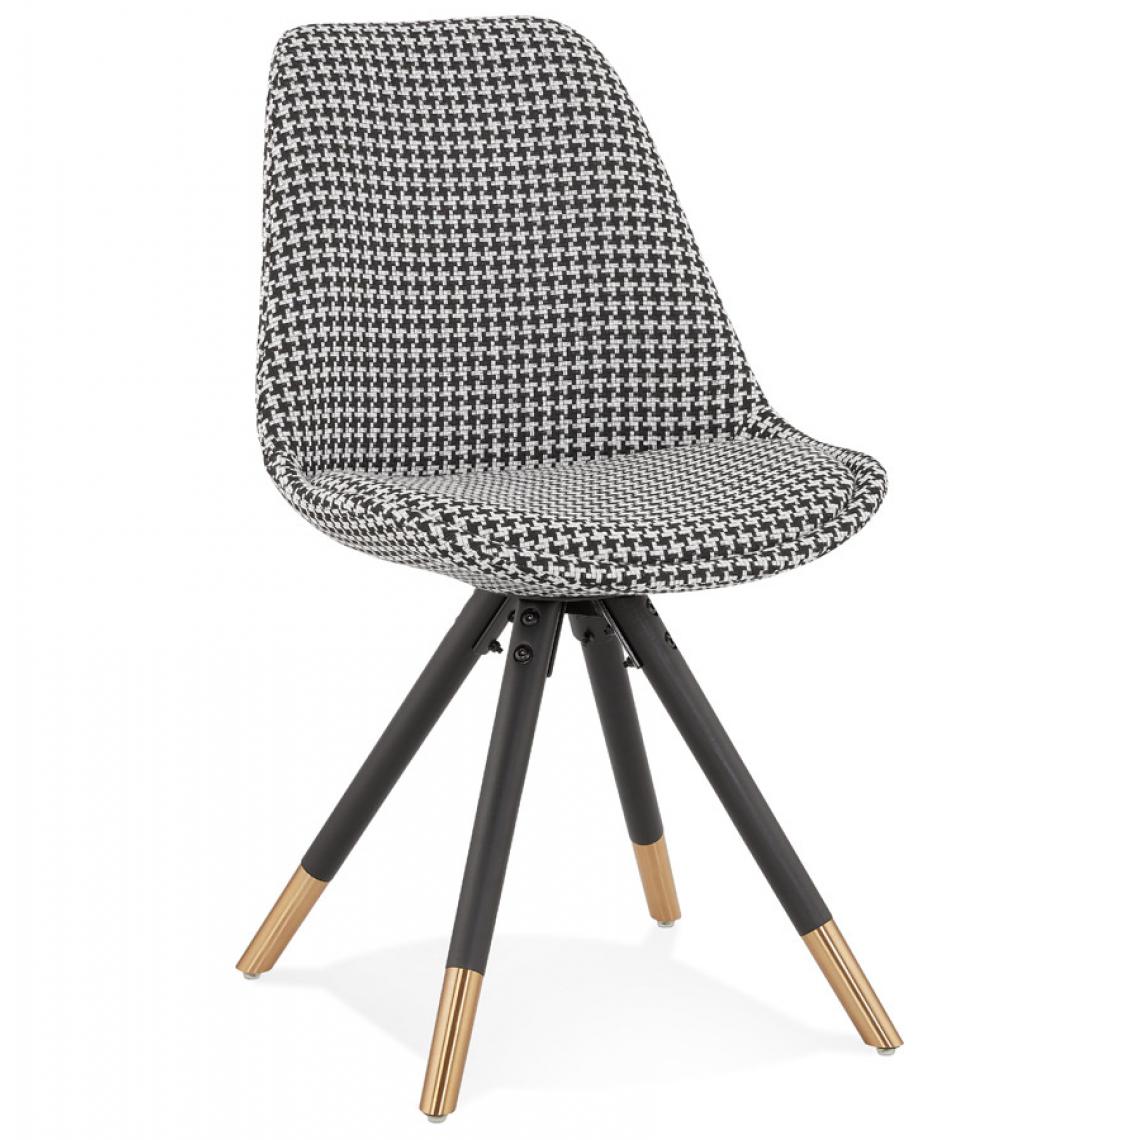 Alterego - Chaise design 'HAMILTON' en tissu pied de poule et pieds en bois noir - Chaises